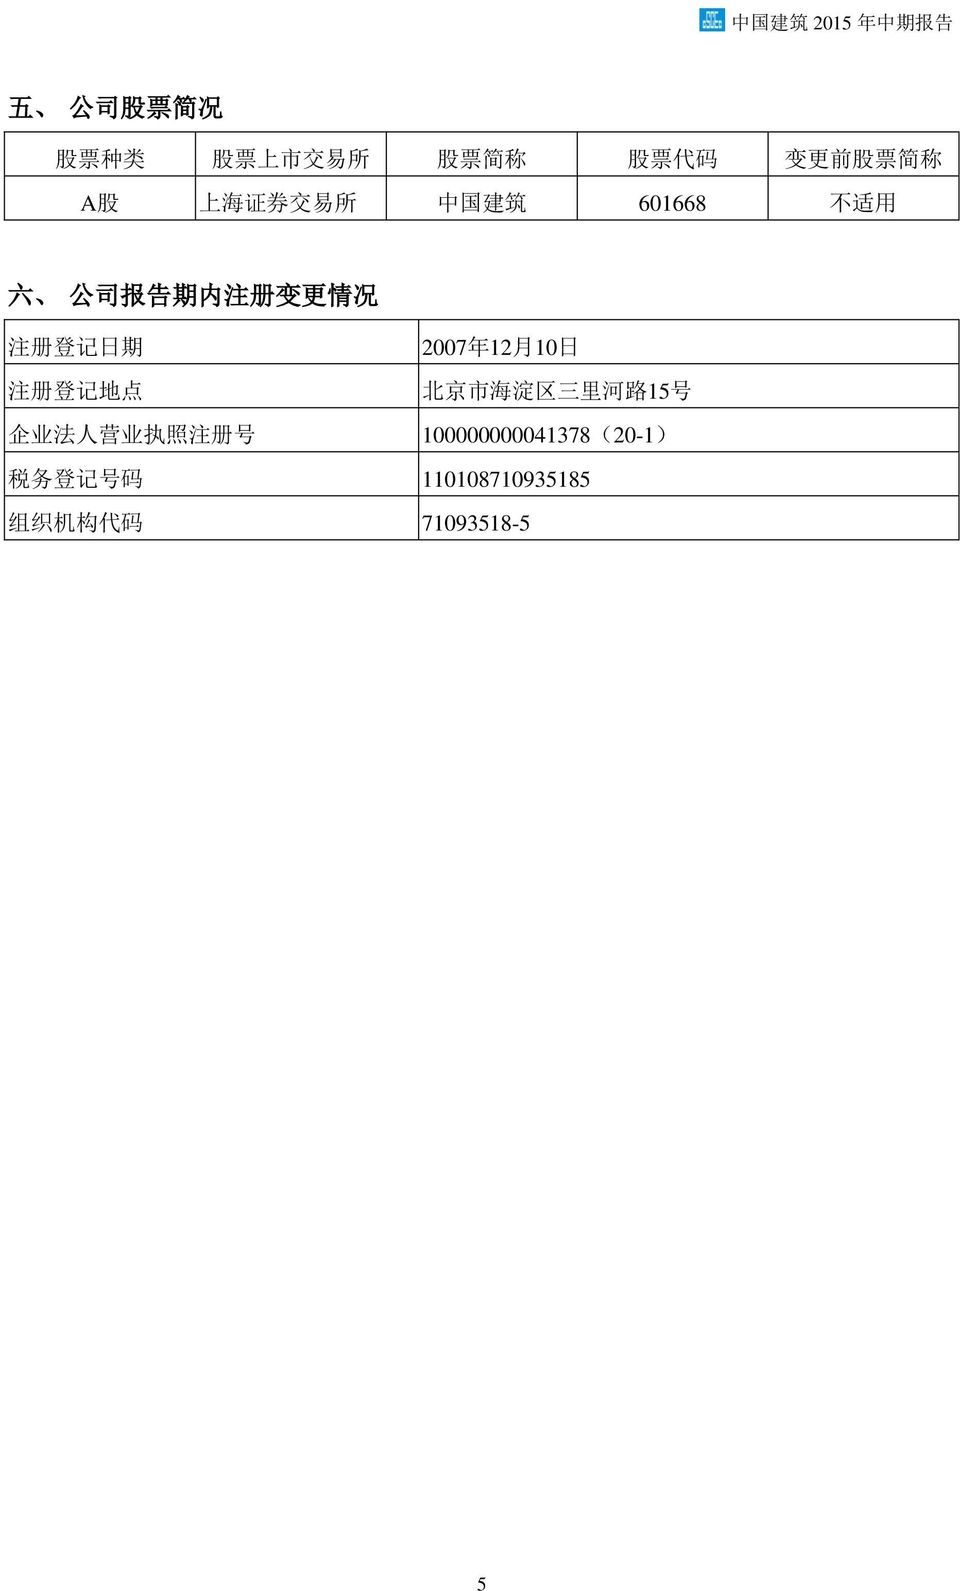 登 记 日 期 注 册 登 记 地 点 2007 年 12 月 10 日 北 京 市 海 淀 区 三 里 河 路 15 号 企 业 法 人 营 业 执 照